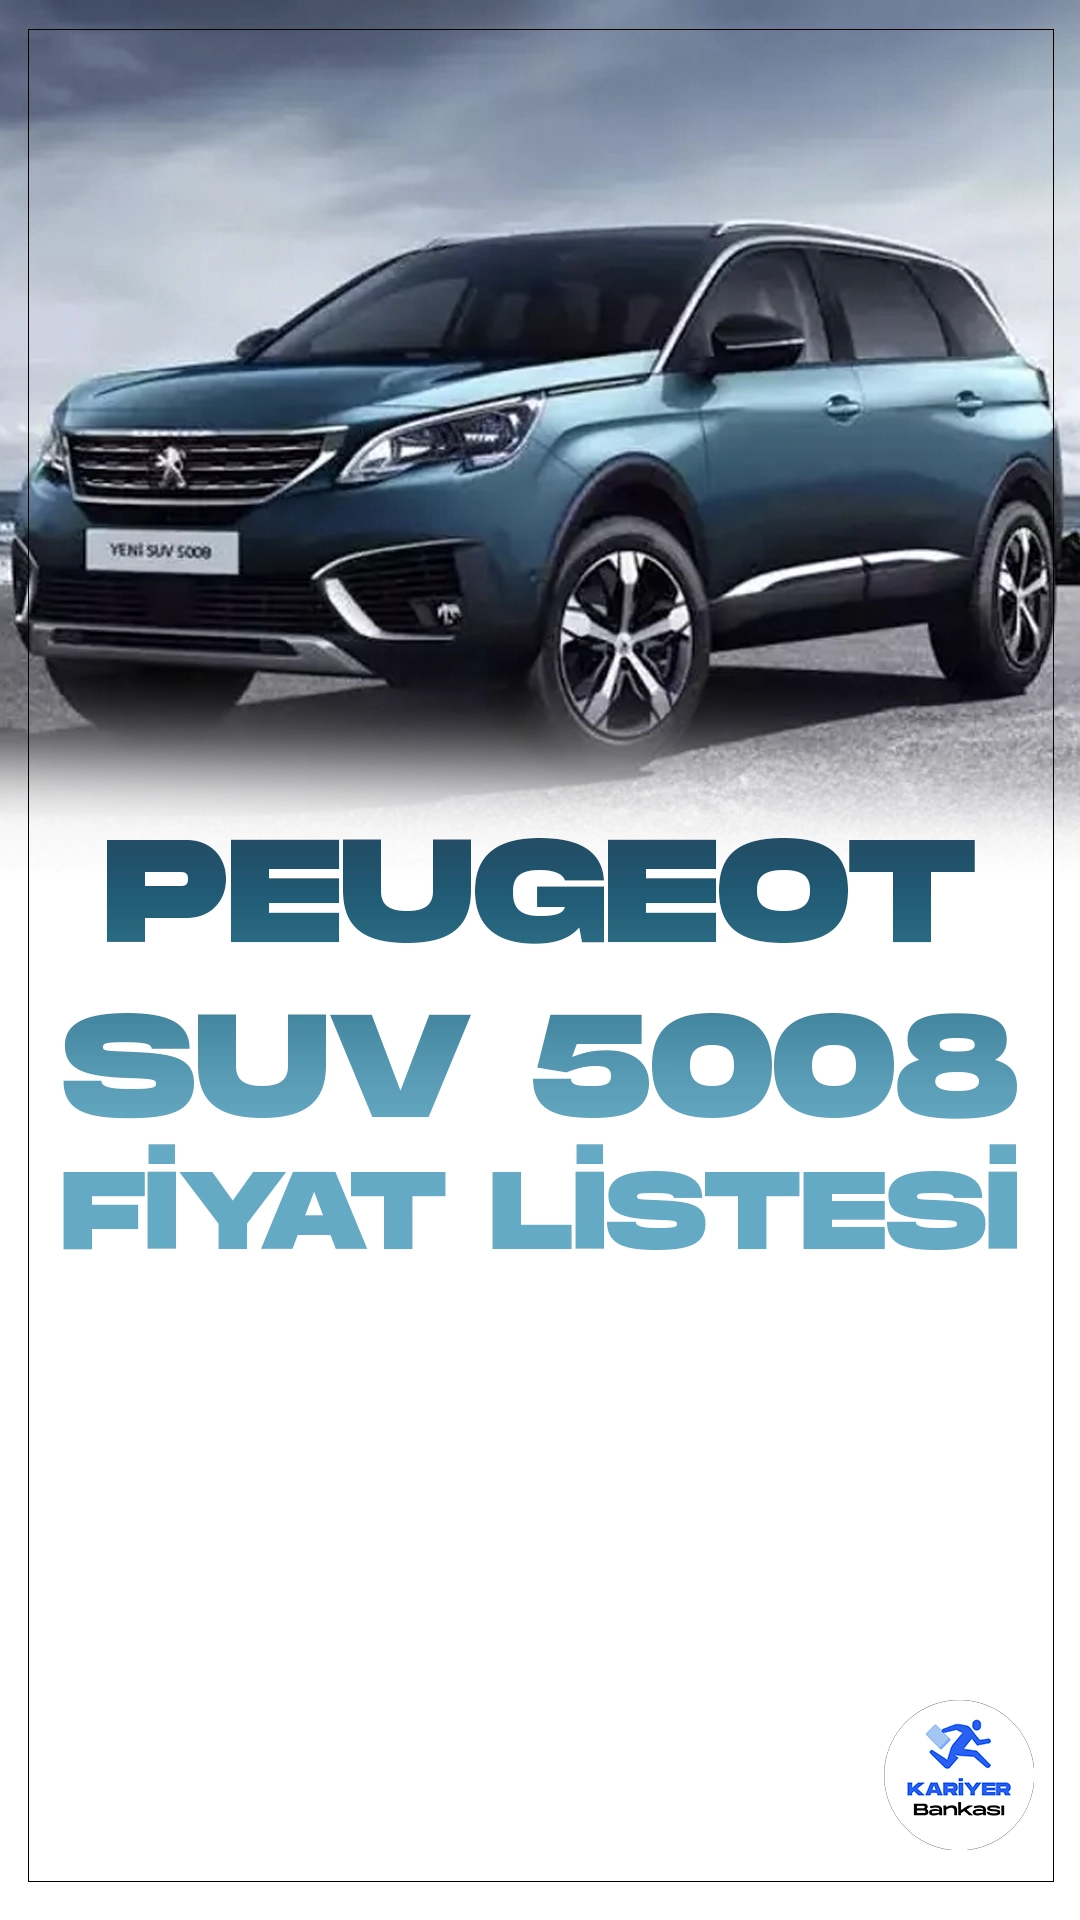 Peugeot Suv 5008 Ocak 2024 Fiyat Listesi Yayımlandı.Peugeot Suv 5008: Fransız Zarafeti ve Güç Bir Arada!Peugeot'un etkileyici SUV serisi, 5008 modeliyle otomobil tutkunlarını büyülemeye devam ediyor. Şık tasarımı ve üstün performansıyla dikkat çeken Peugeot Suv 5008, sürücüleri kendine hayran bırakıyor. Araç, Fransız otomotiv geleneğini yansıtarak estetik detaylarıyla öne çıkıyor.